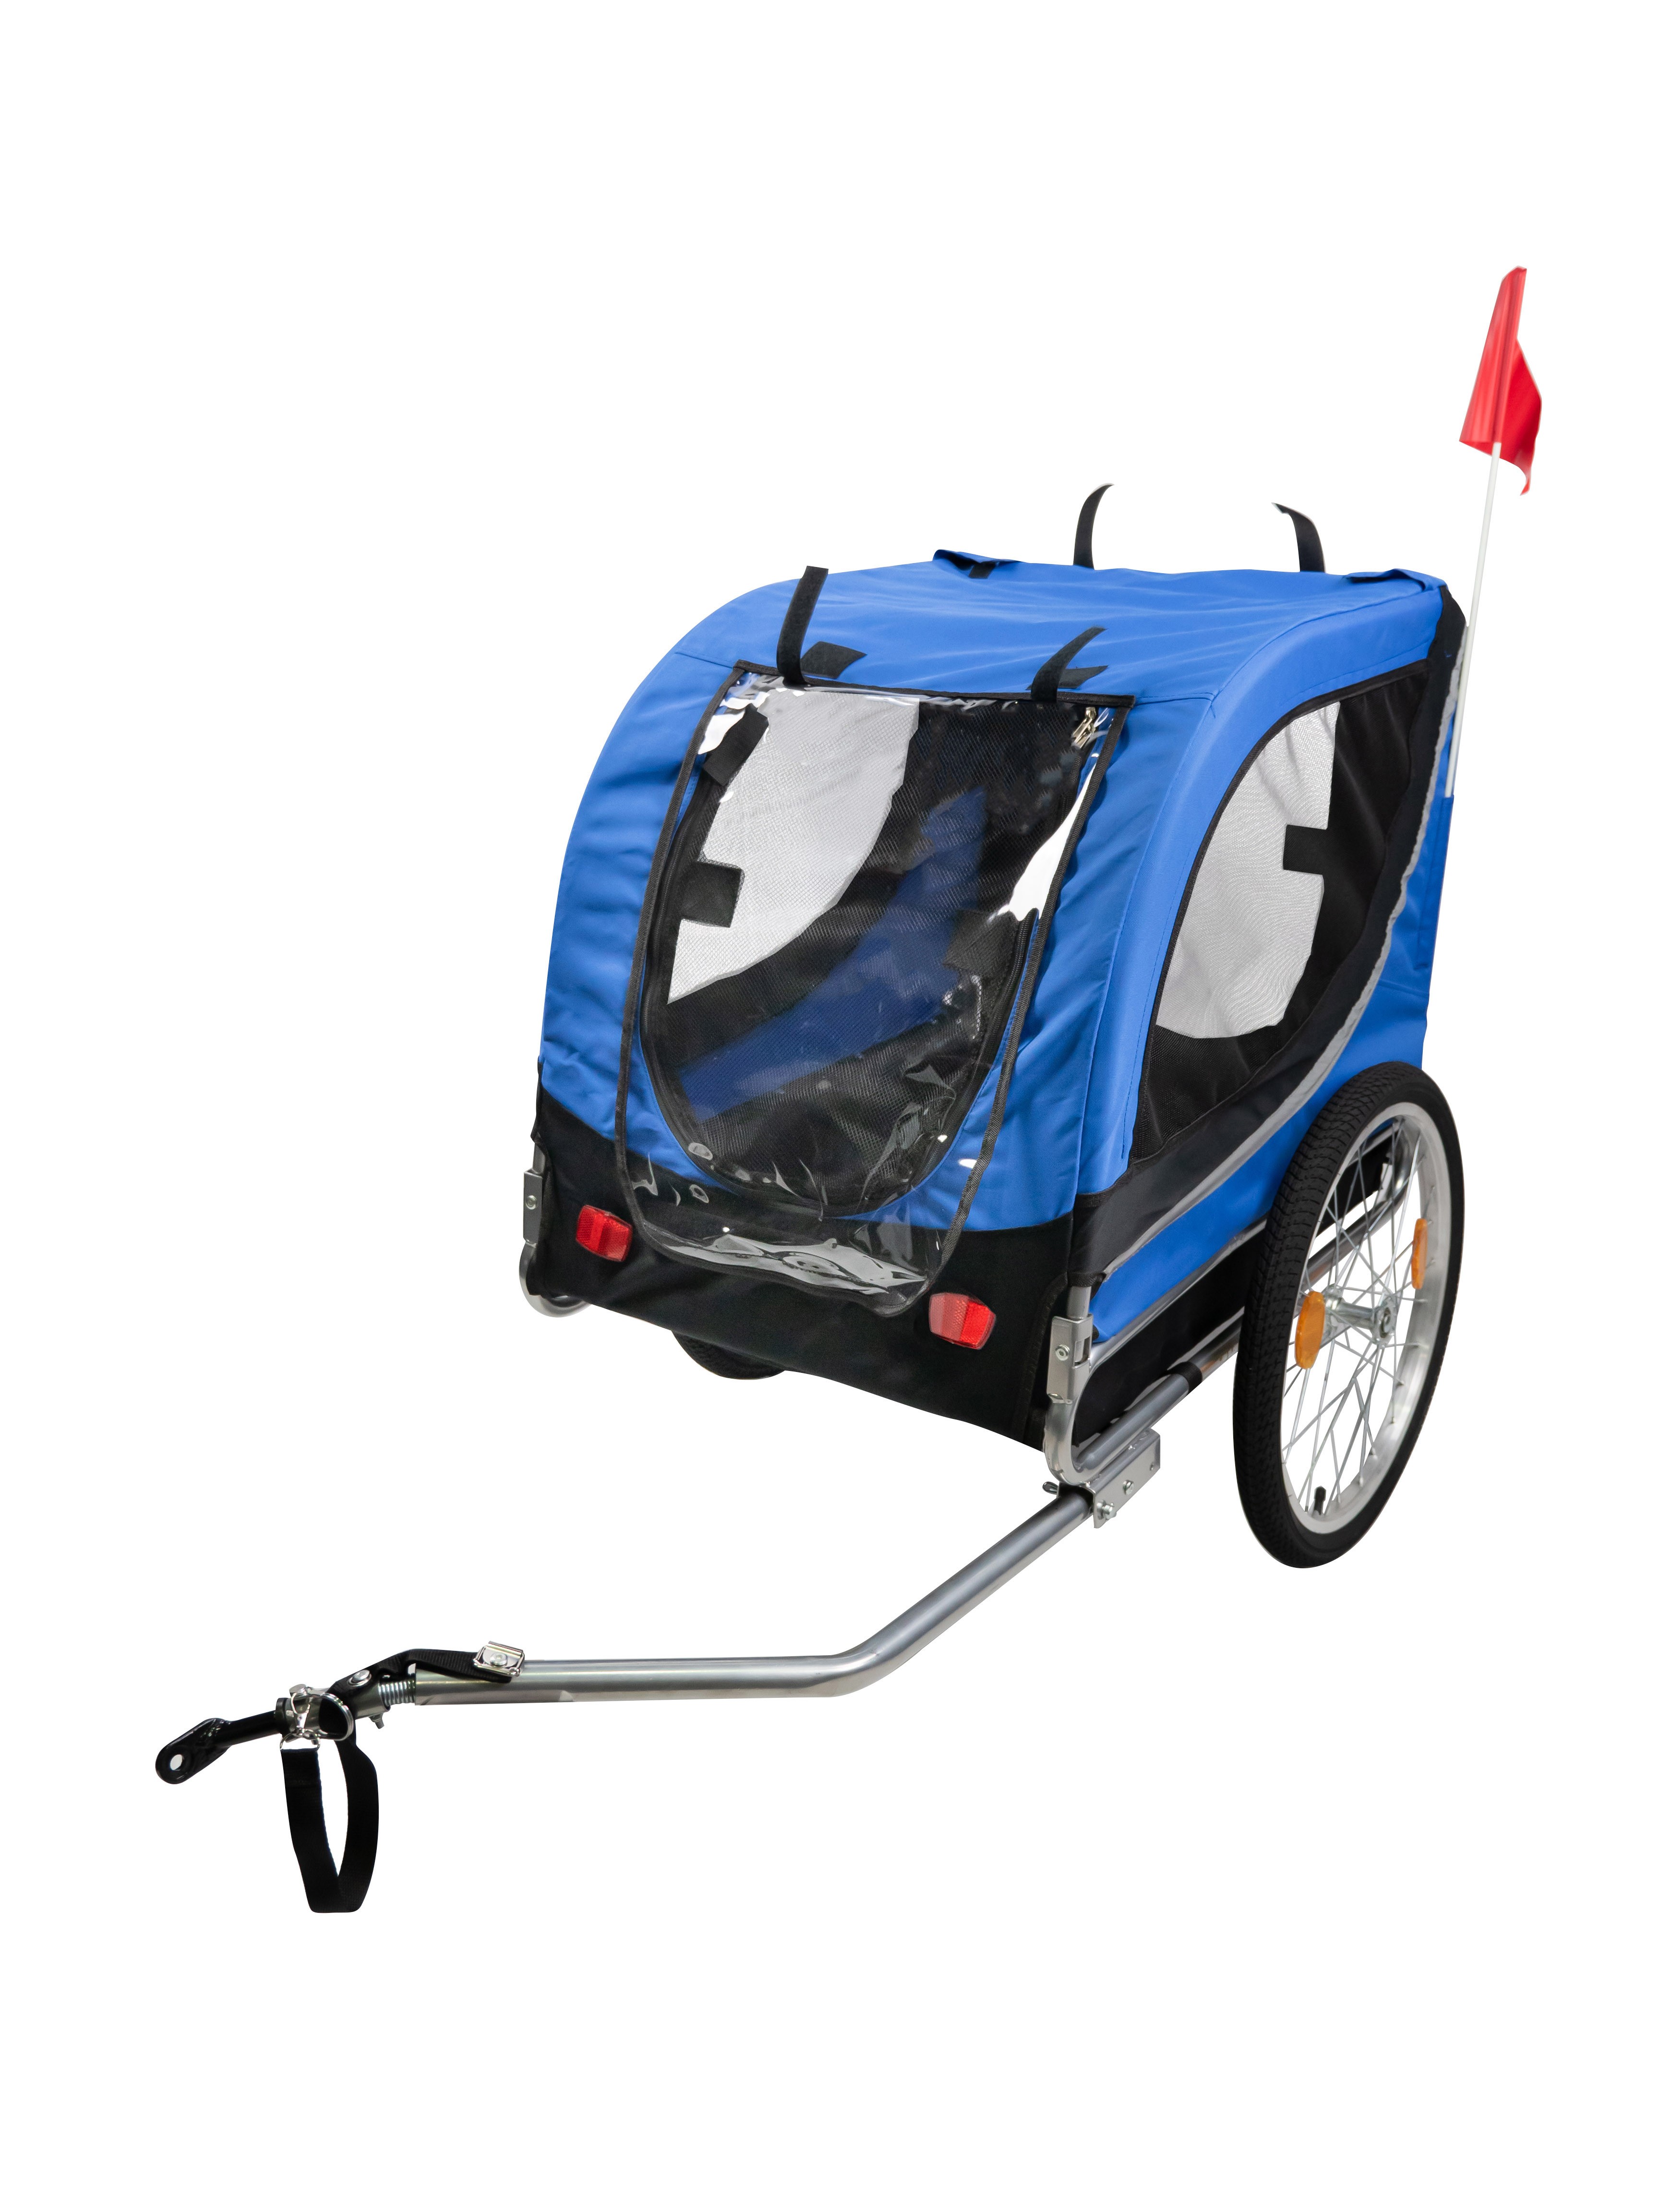 XLC Doggy Van remorque vélo chiens